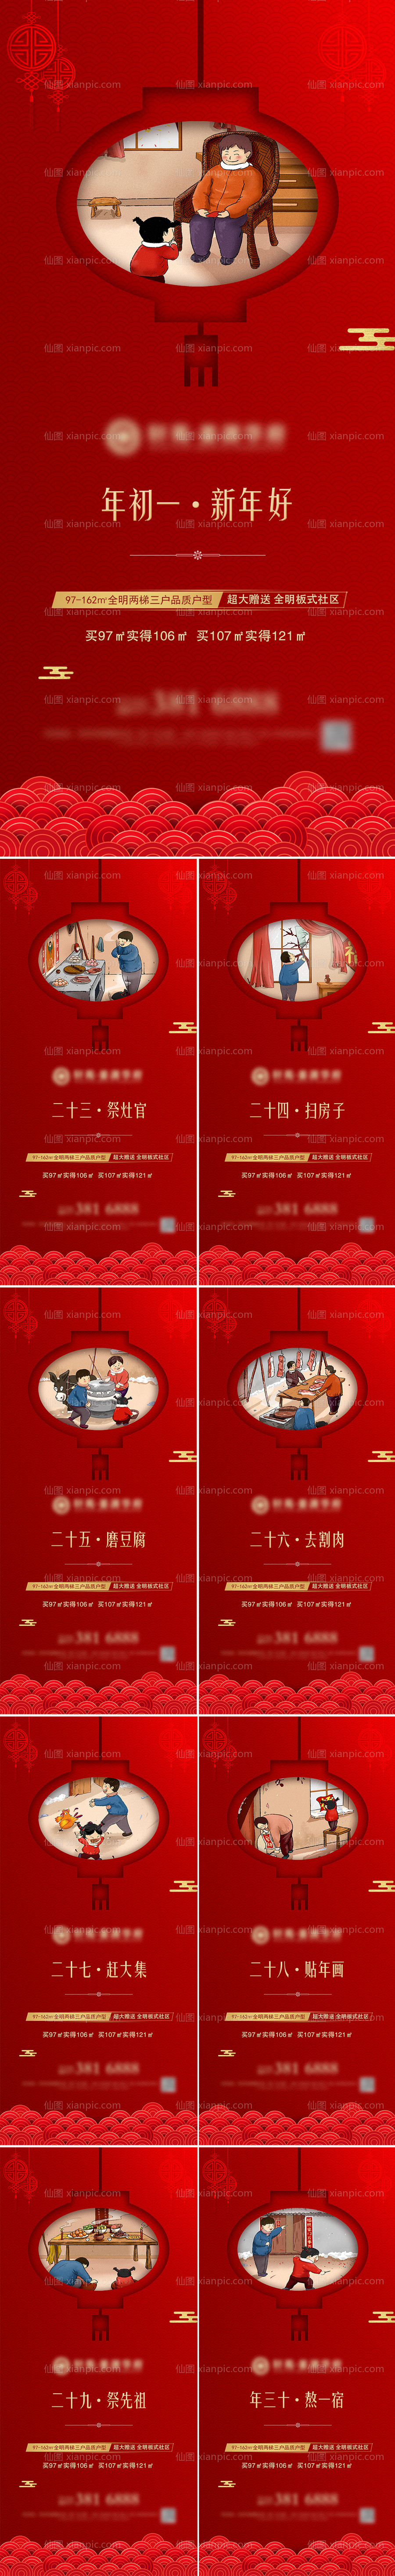 素材乐-春节新年年俗微信刷屏稿